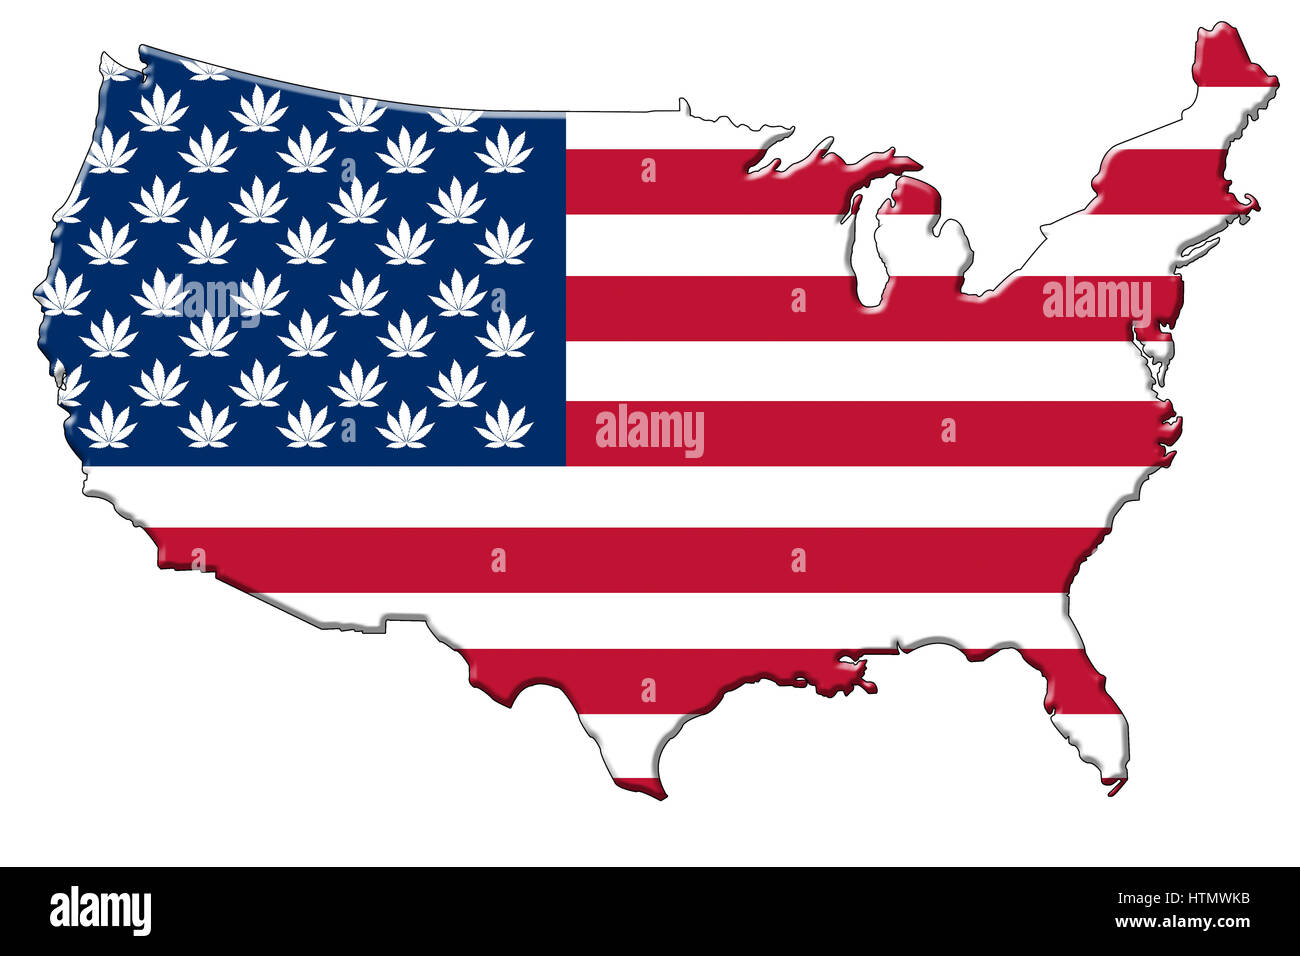 Drapeau américain avec des feuilles de cannabis au lieu d'étoiles dans la forme du continent de l'USA. Banque D'Images